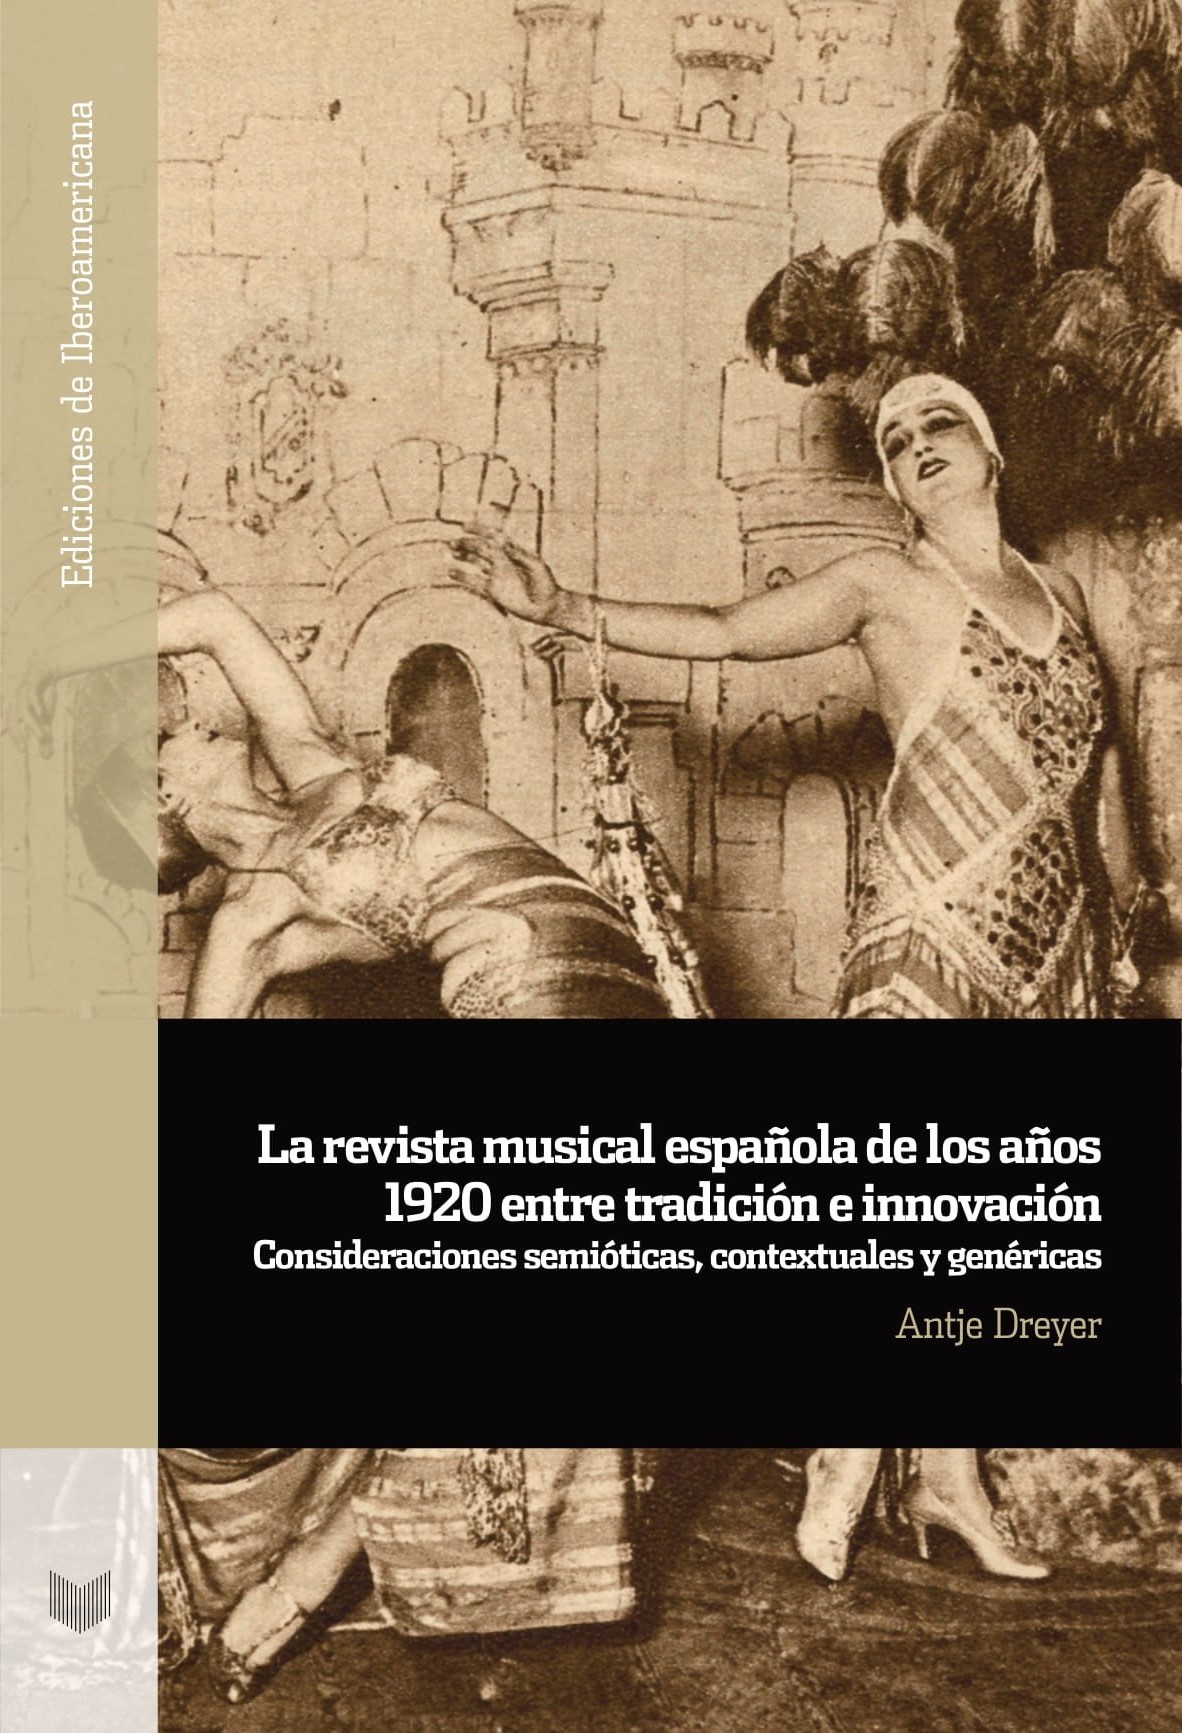 La revista musical española de los años 1920 entre tradición e innovación. 9788491922520